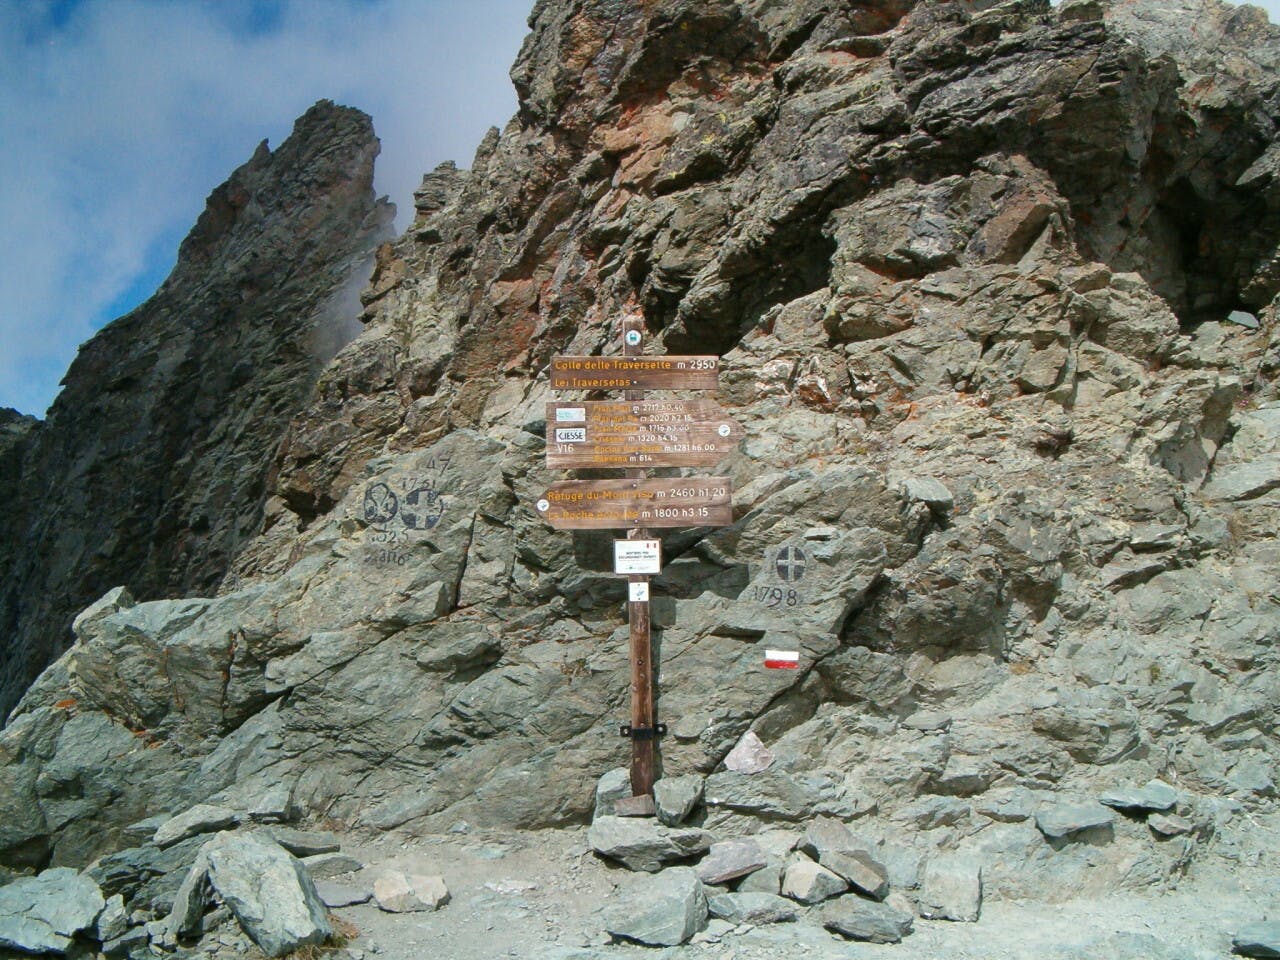 Een houten routebord aan de zijkant van een rotsachtige berg.